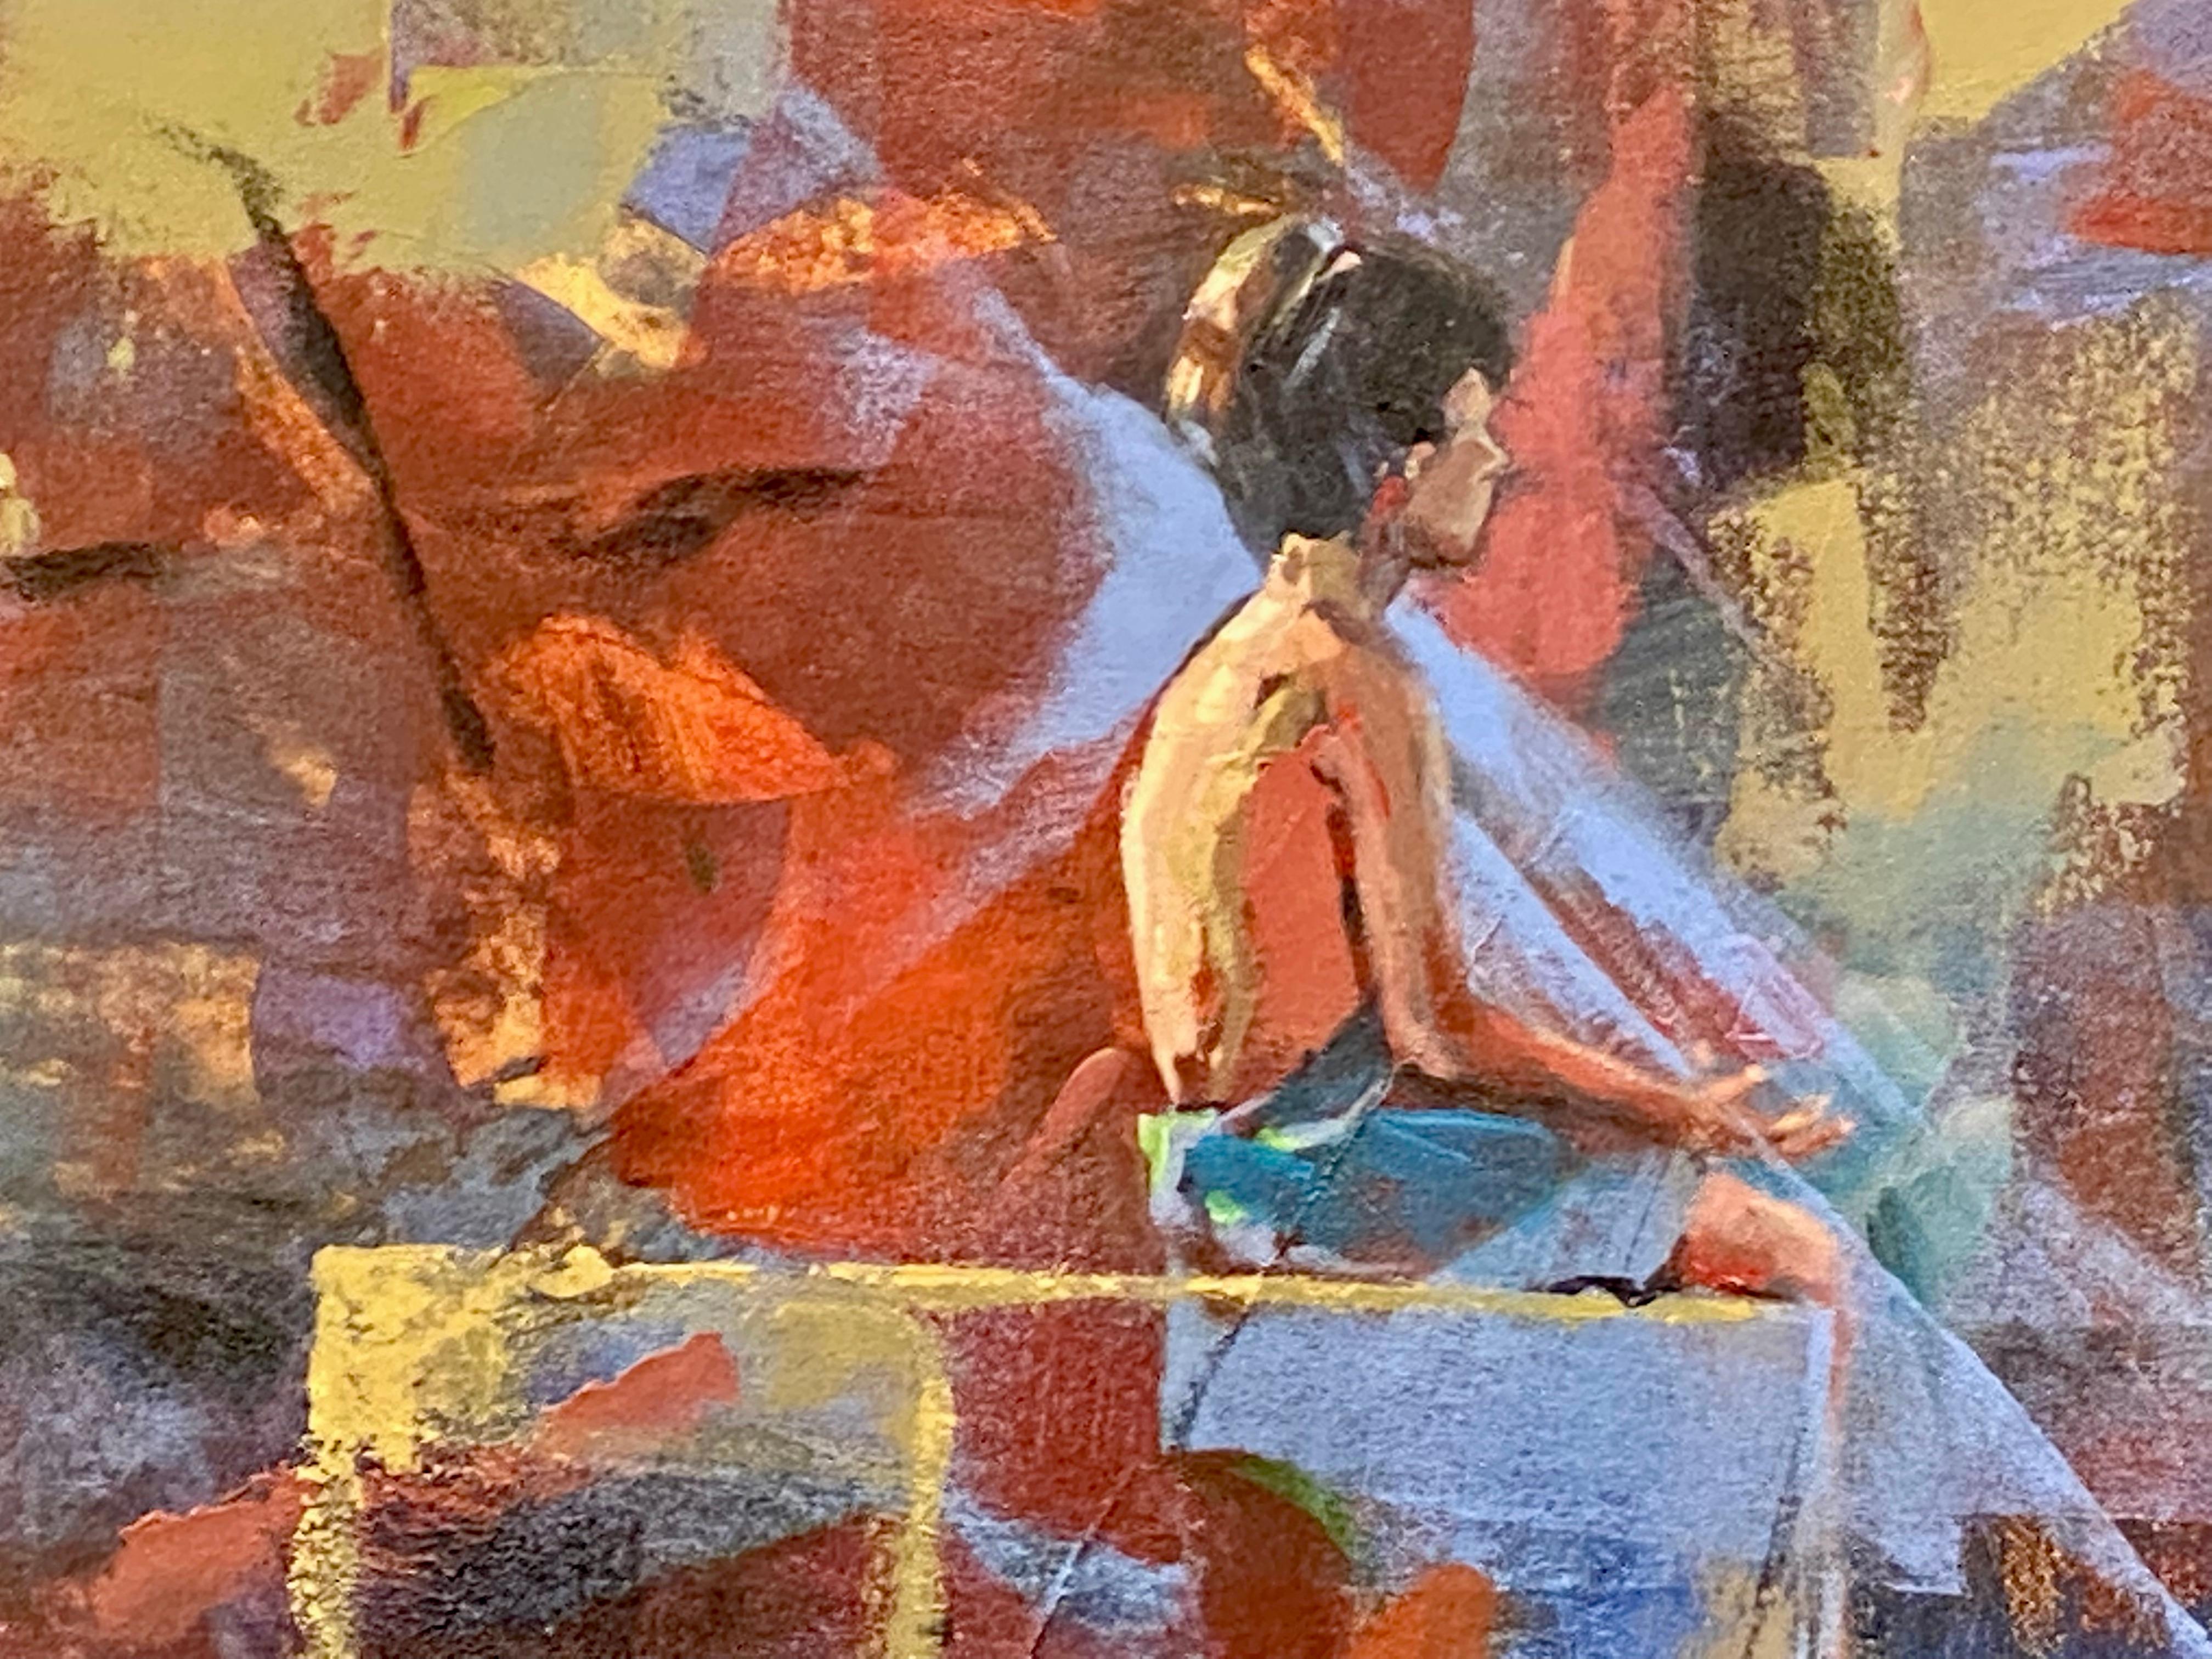 Le méditateur - Peinture contemporaine du 21e siècle d'un garçon en train de méditer - Contemporain Painting par Mitzy Renooy